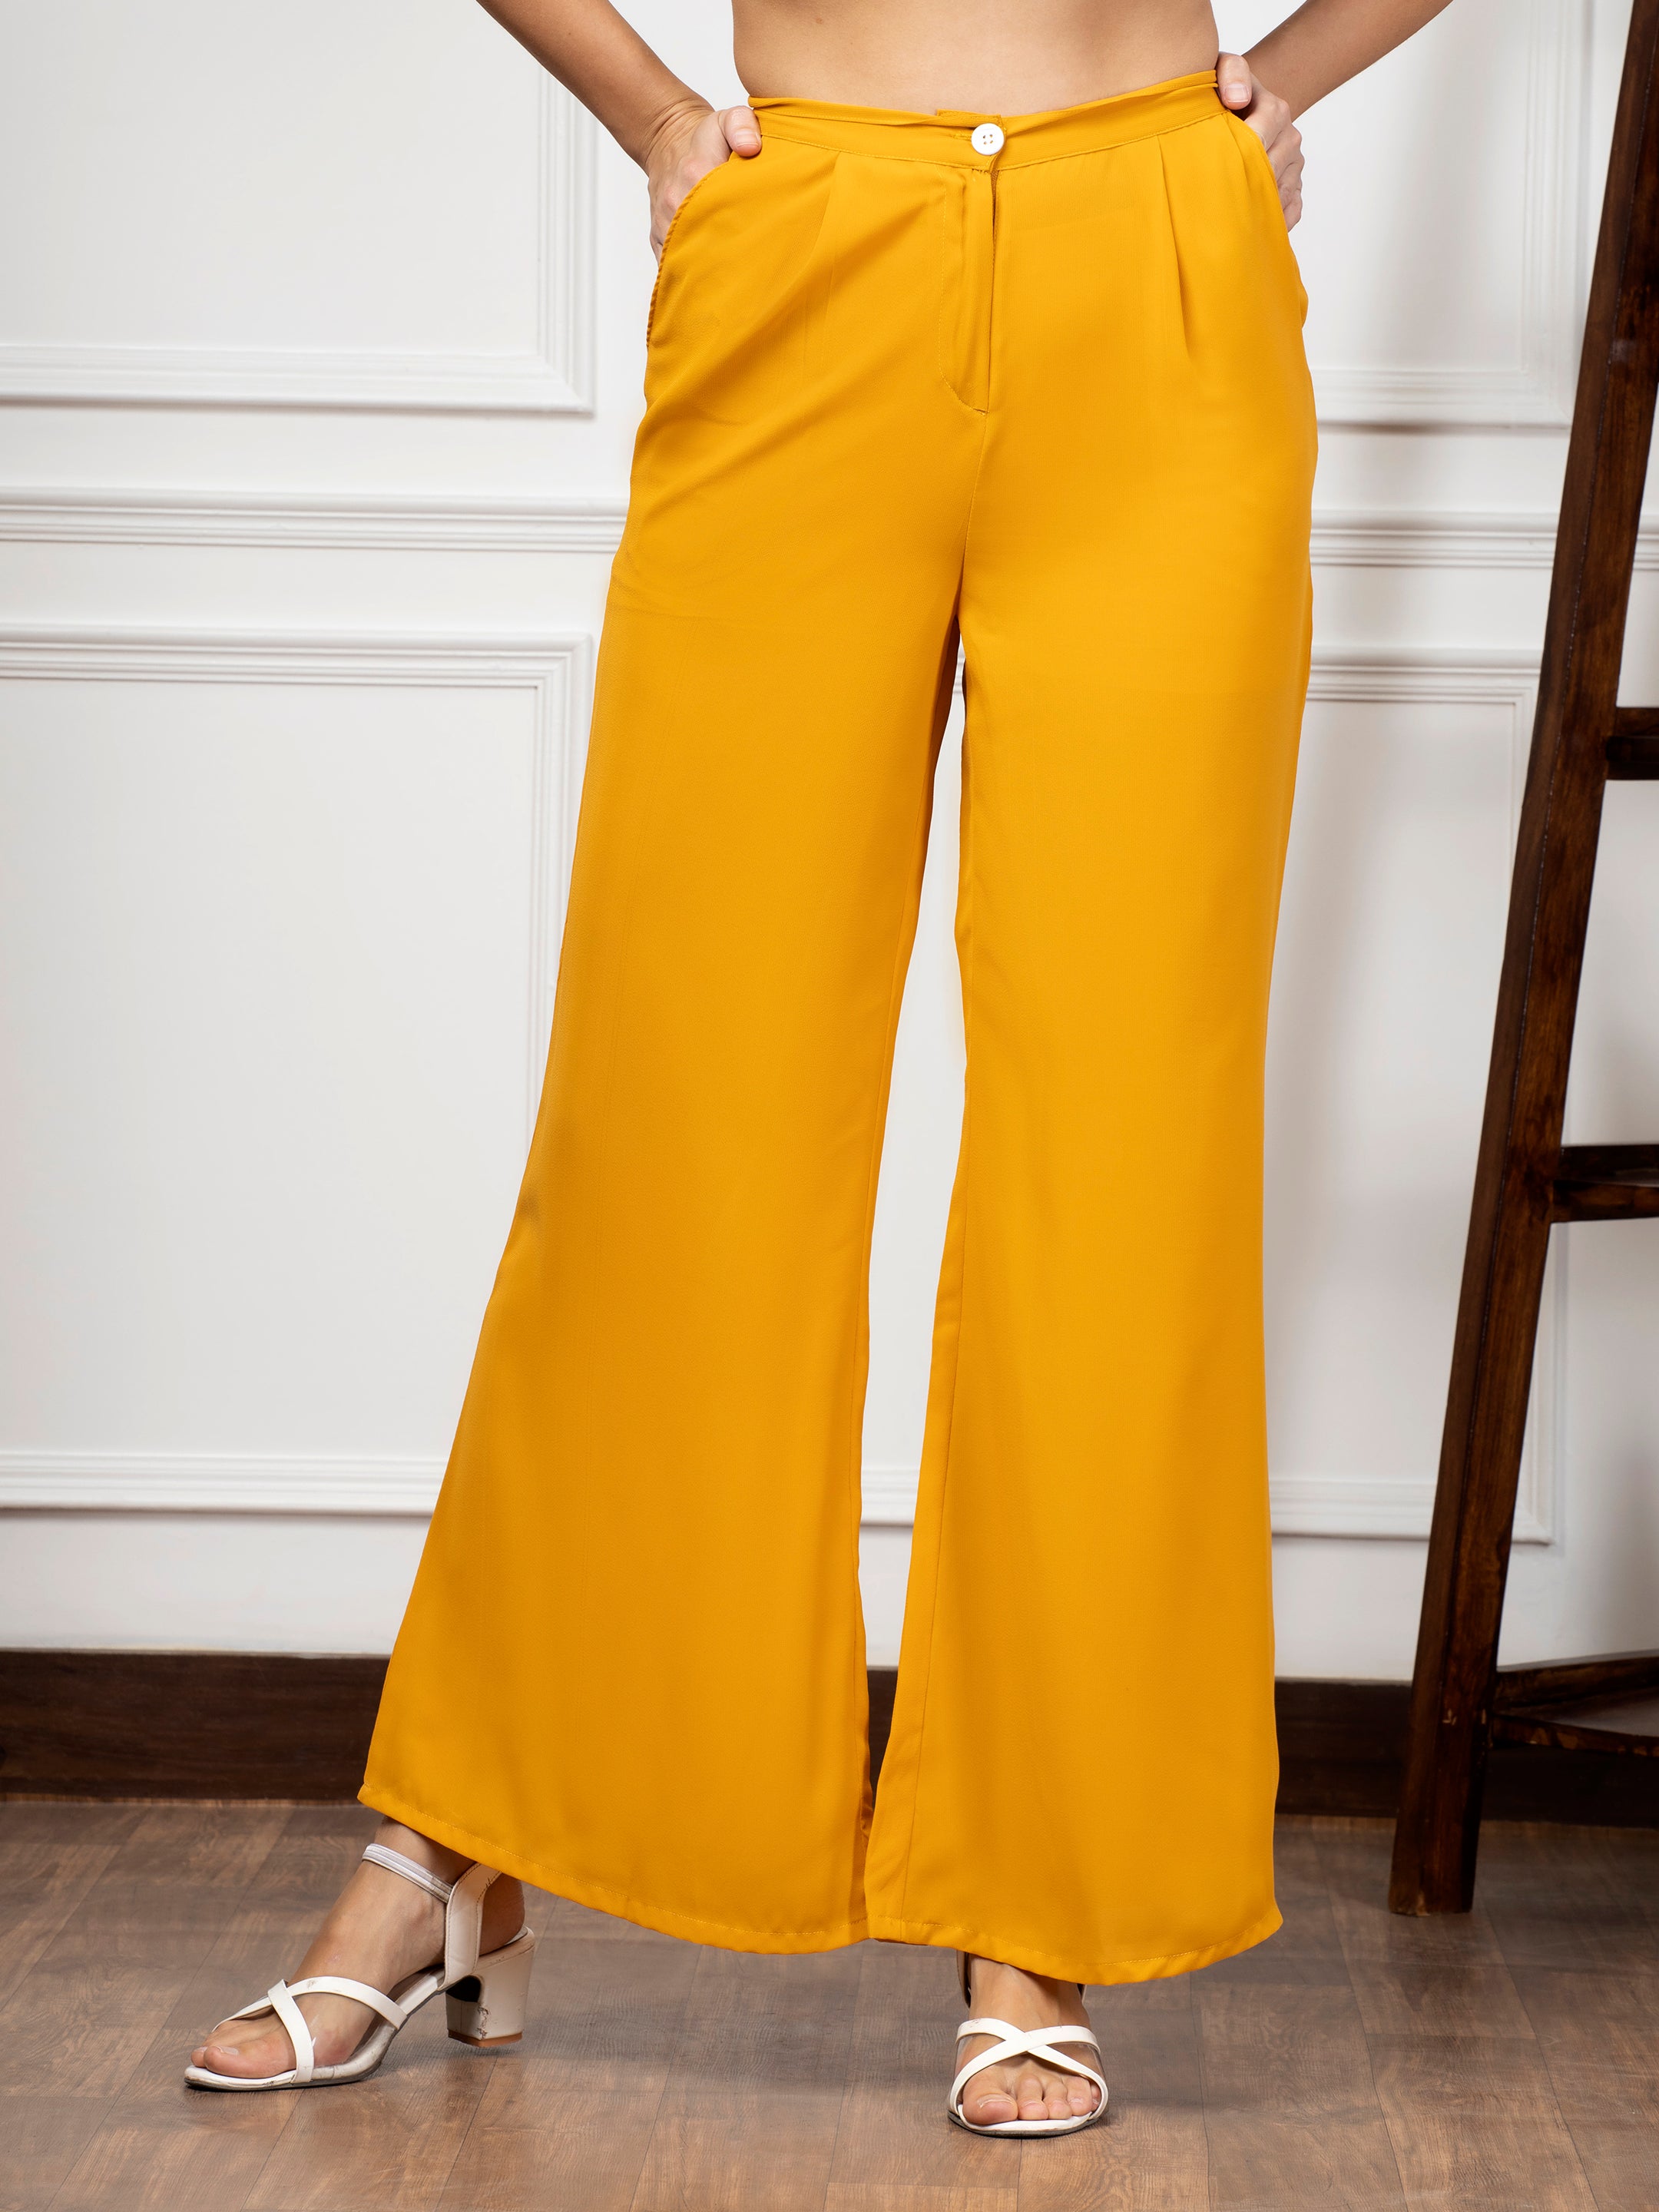 Buy Women Yellow Solid Formal Regular Fit Trousers Online  648930  Van  Heusen